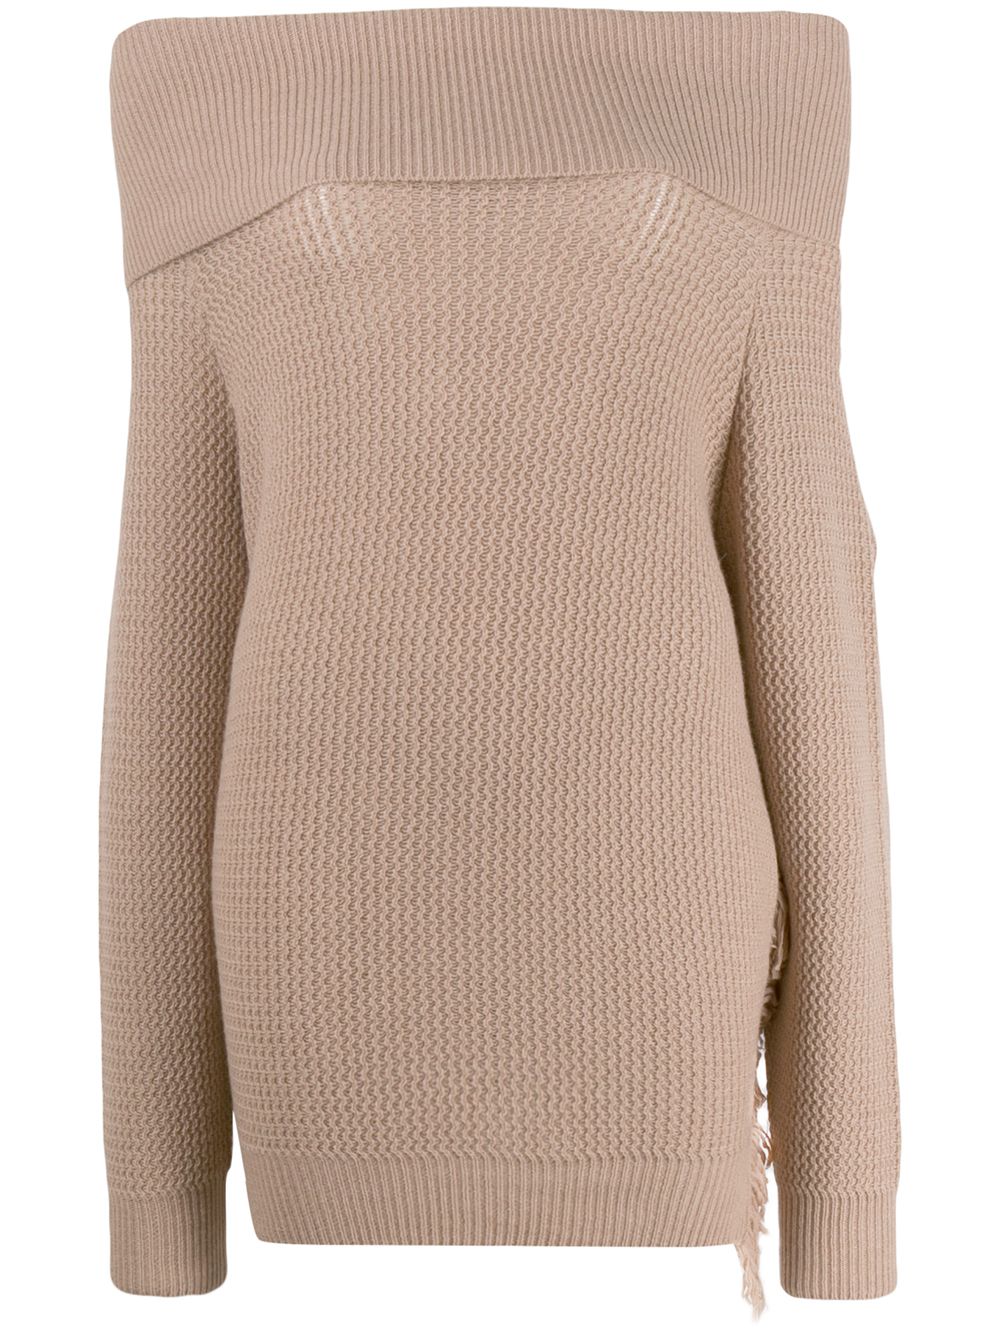 фото Stella mccartney вязаный свитер с бахромой и открытыми плечами